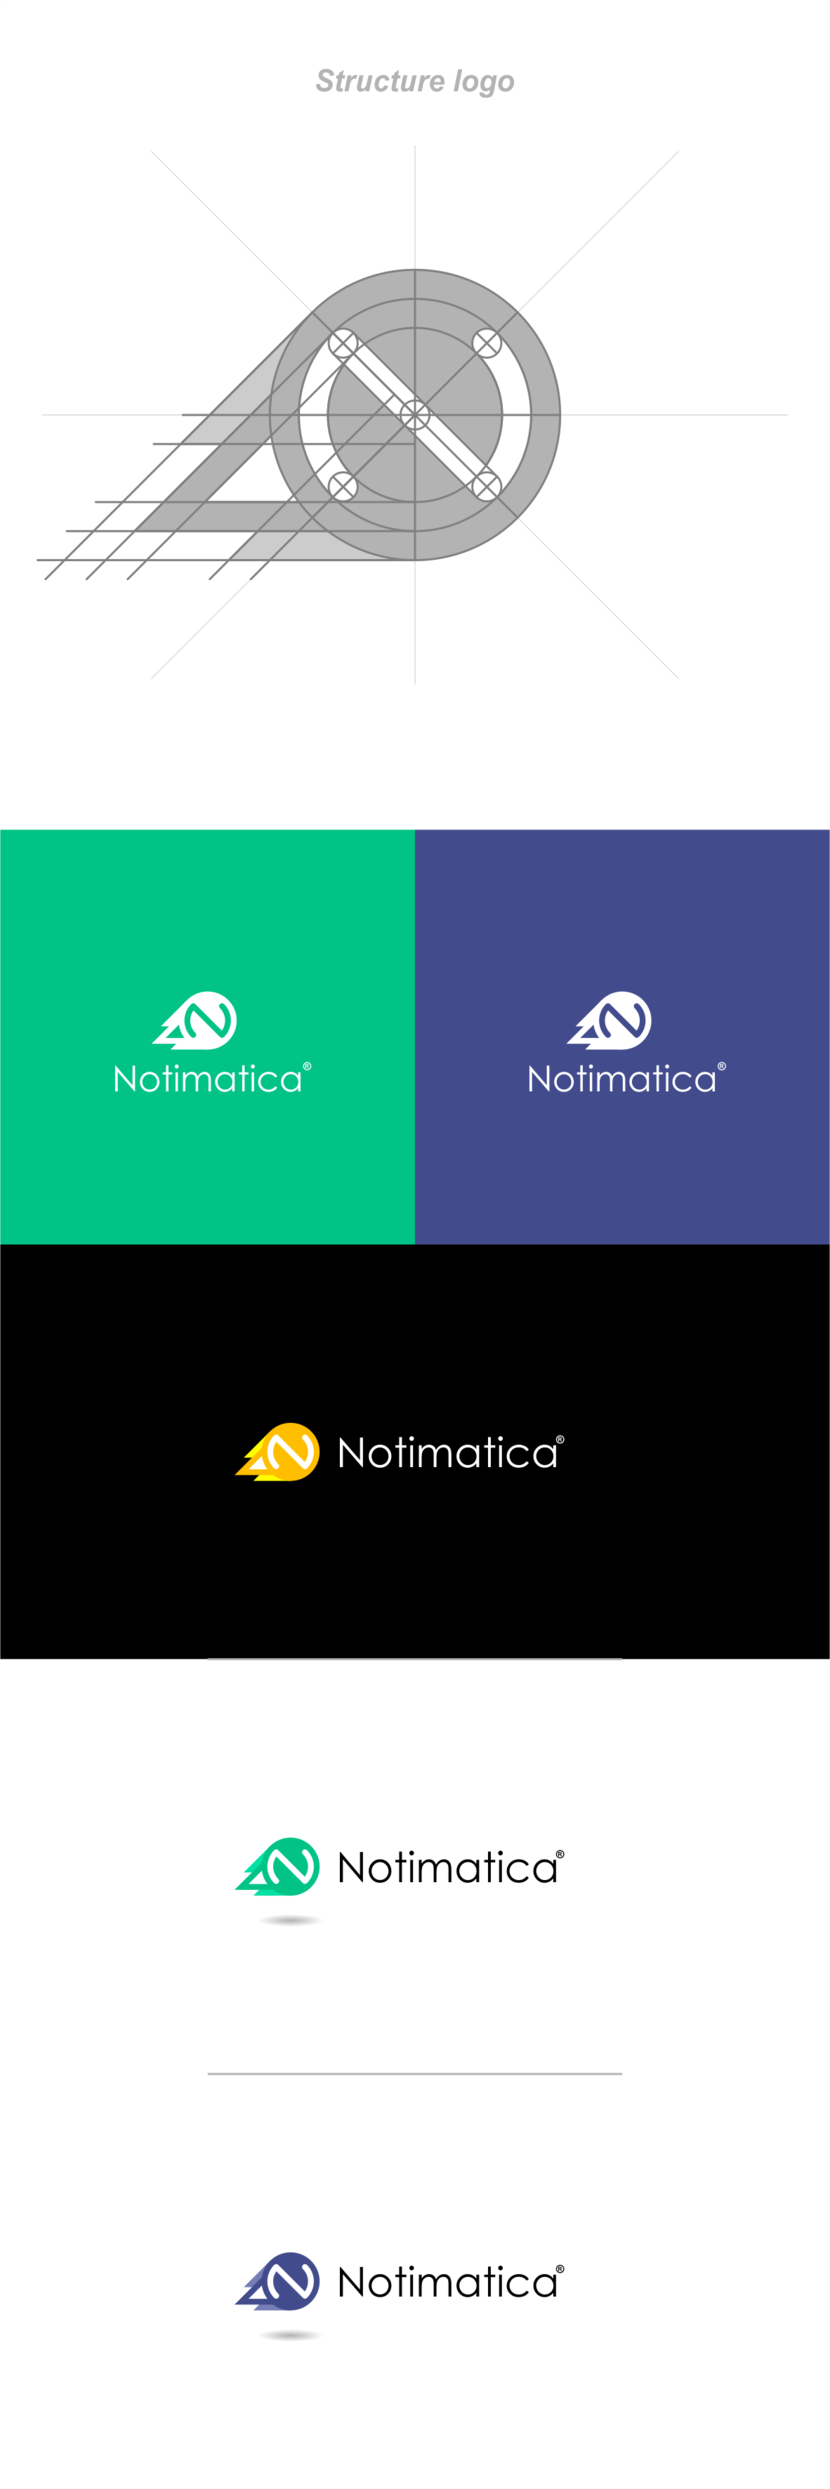 + С некоторыми корректировками и уточнениями... - Разработать логотип веб-сервиса Notimatica.io